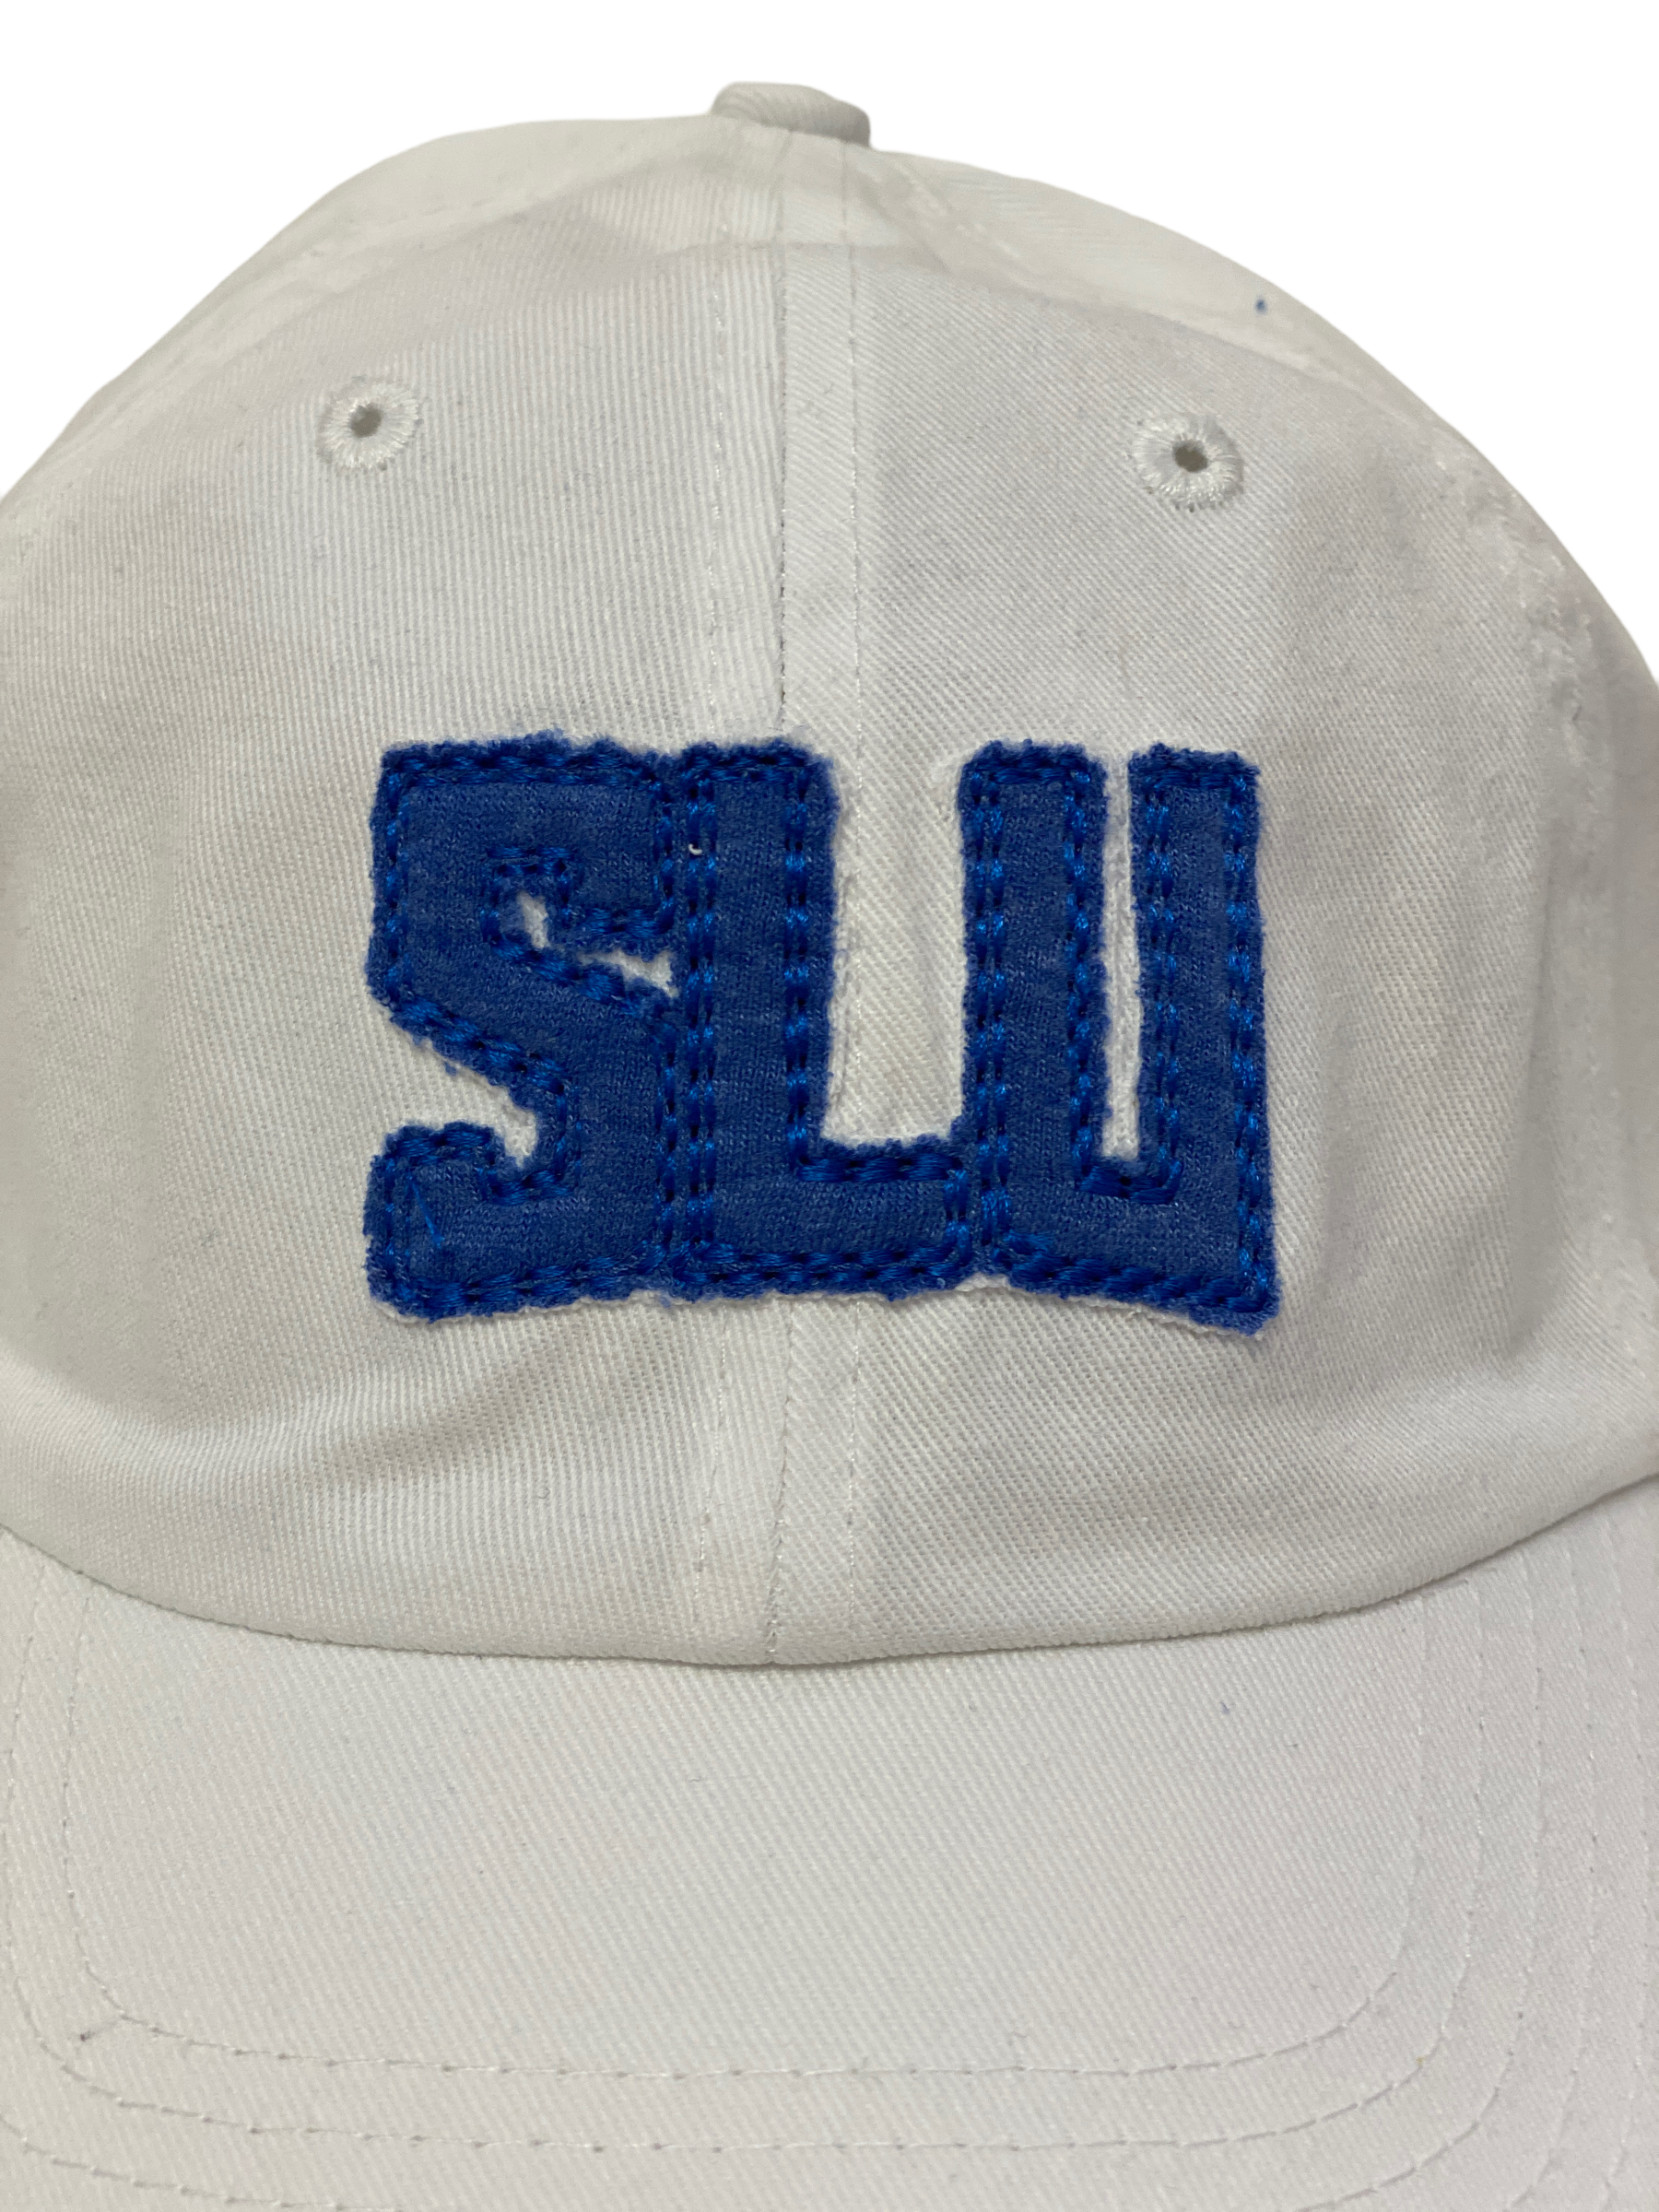 Saint Louis University Hats, Saint Louis University Caps